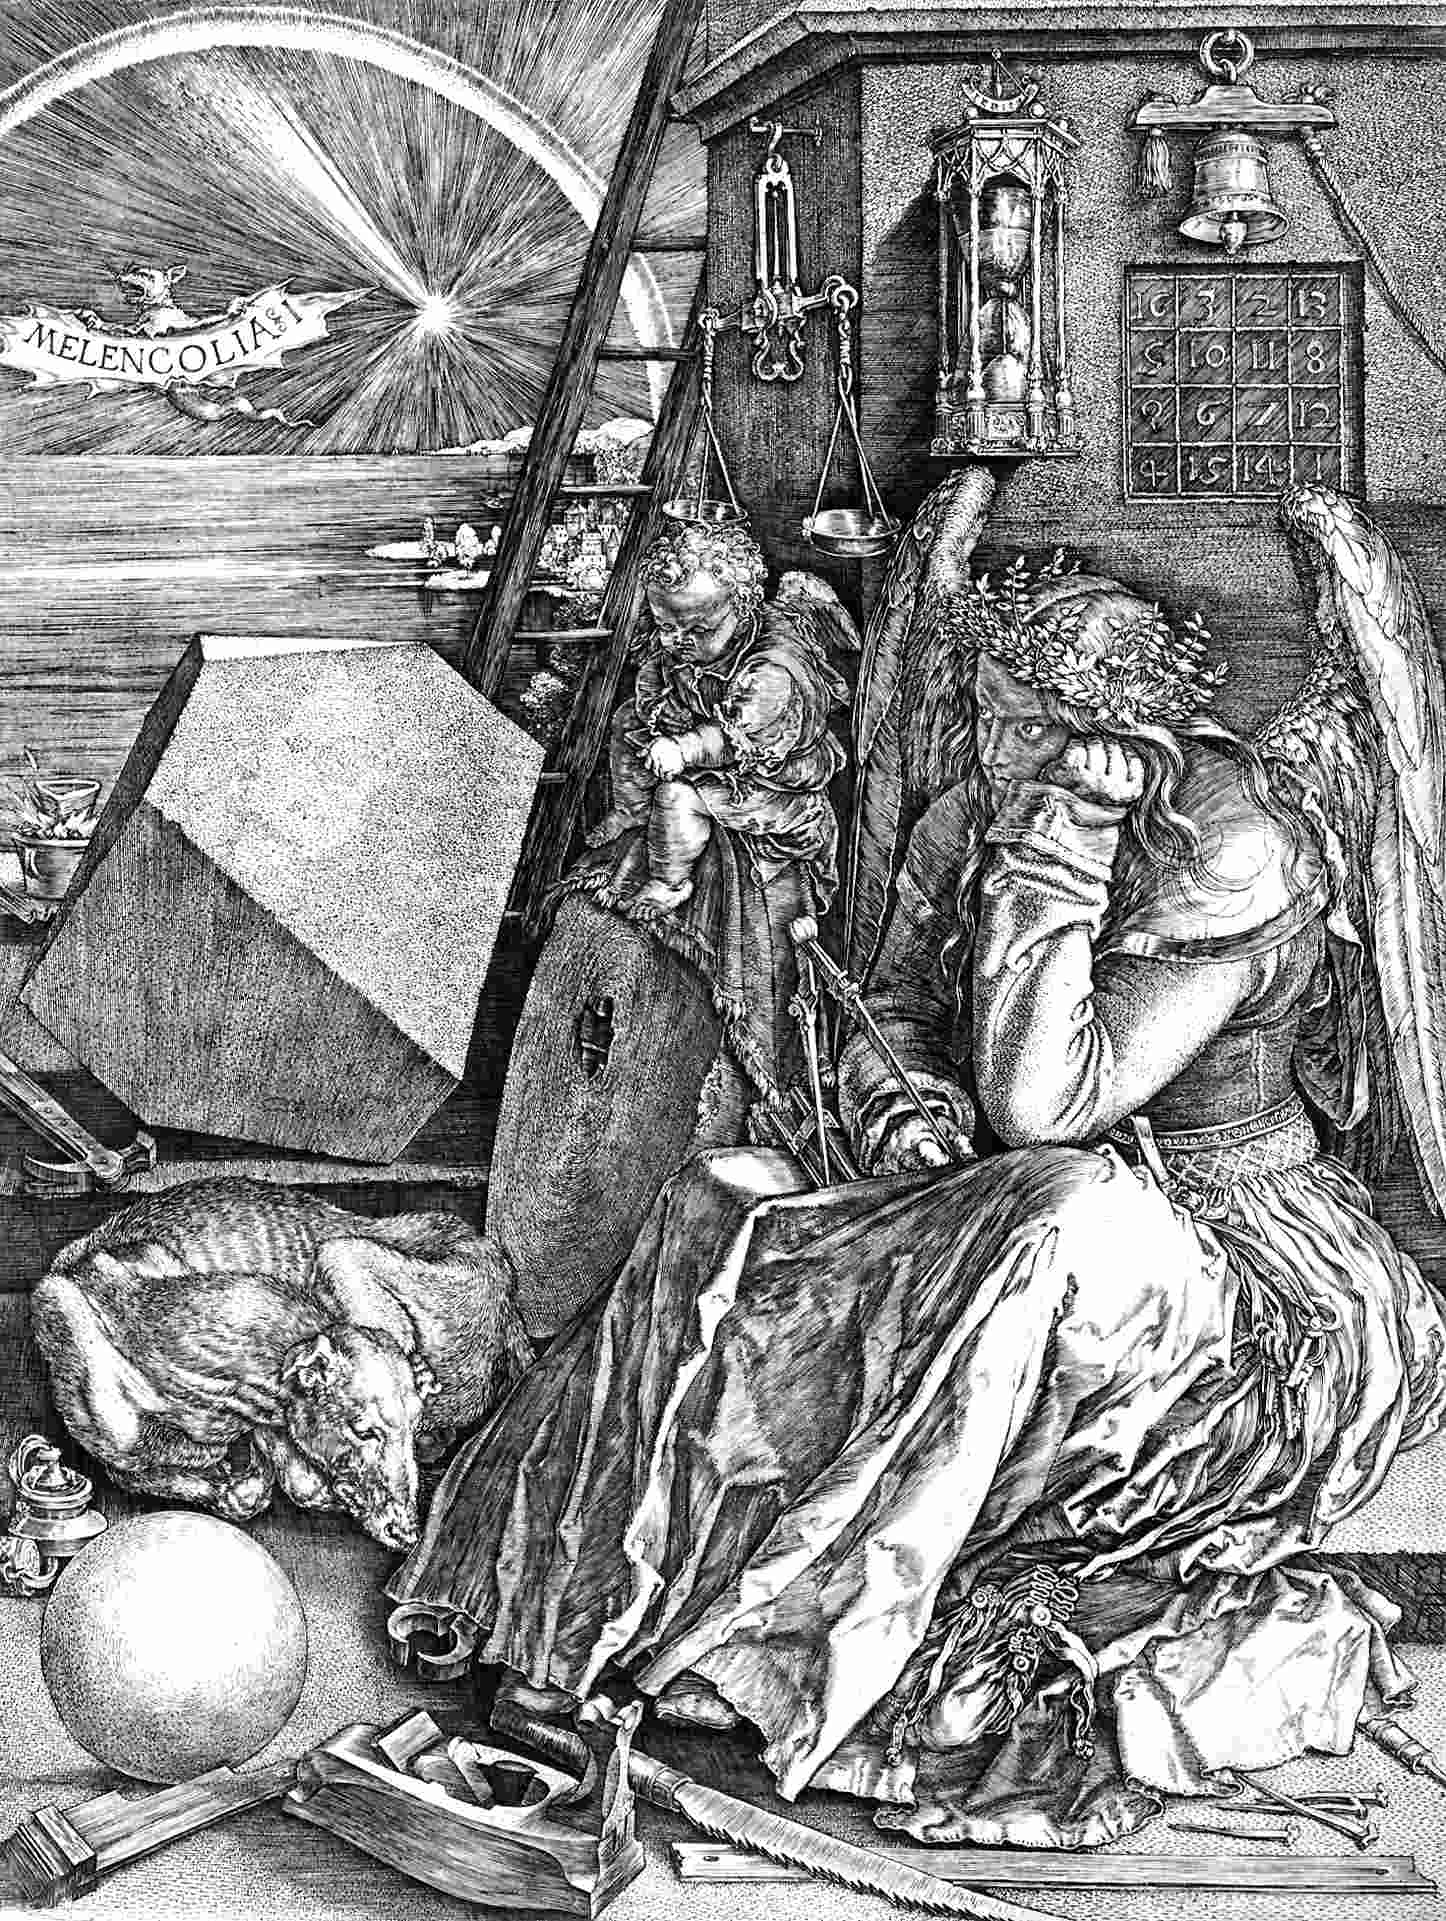 Gravura "Mellancolia", de Albrecht Dürer